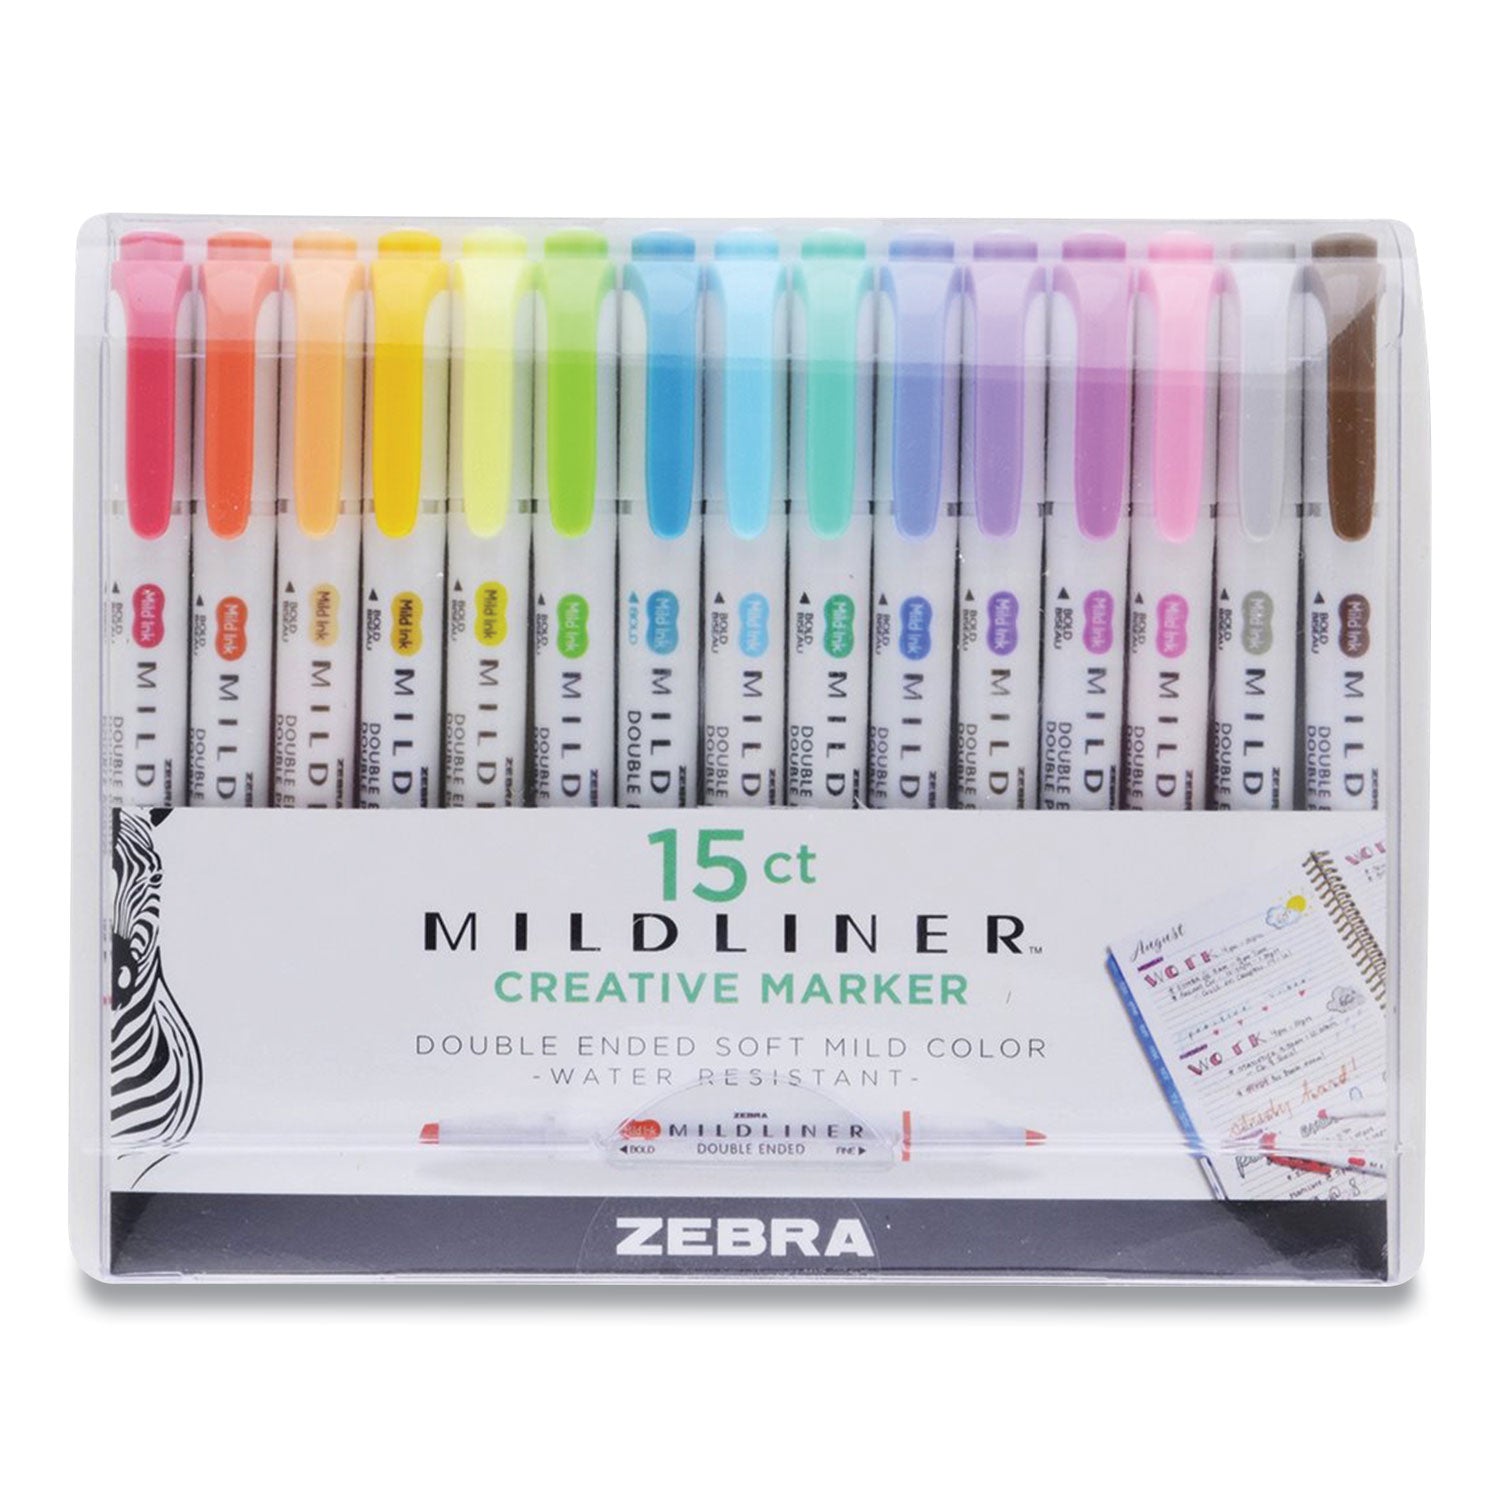 mildliner-double-ended-highlighter-assorted-ink-colors-bold-chisel-fine-bullet-tips-assorted-barrel-colors-15-pack_zeb78115 - 1